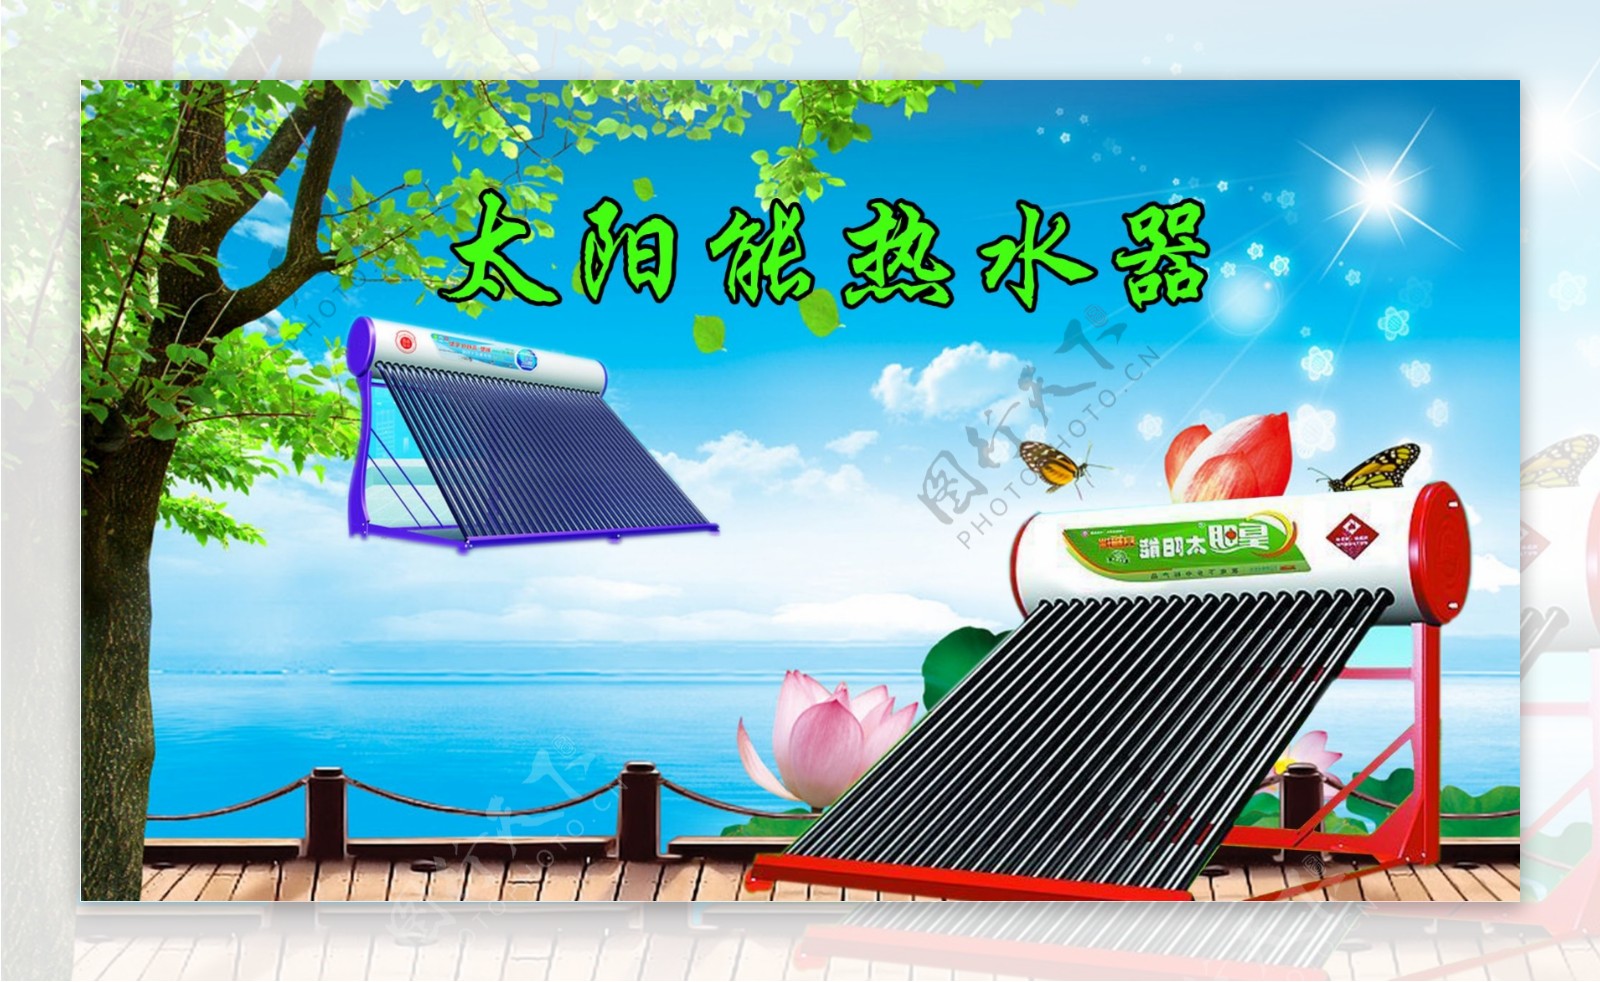 皇明太阳能热水器广告